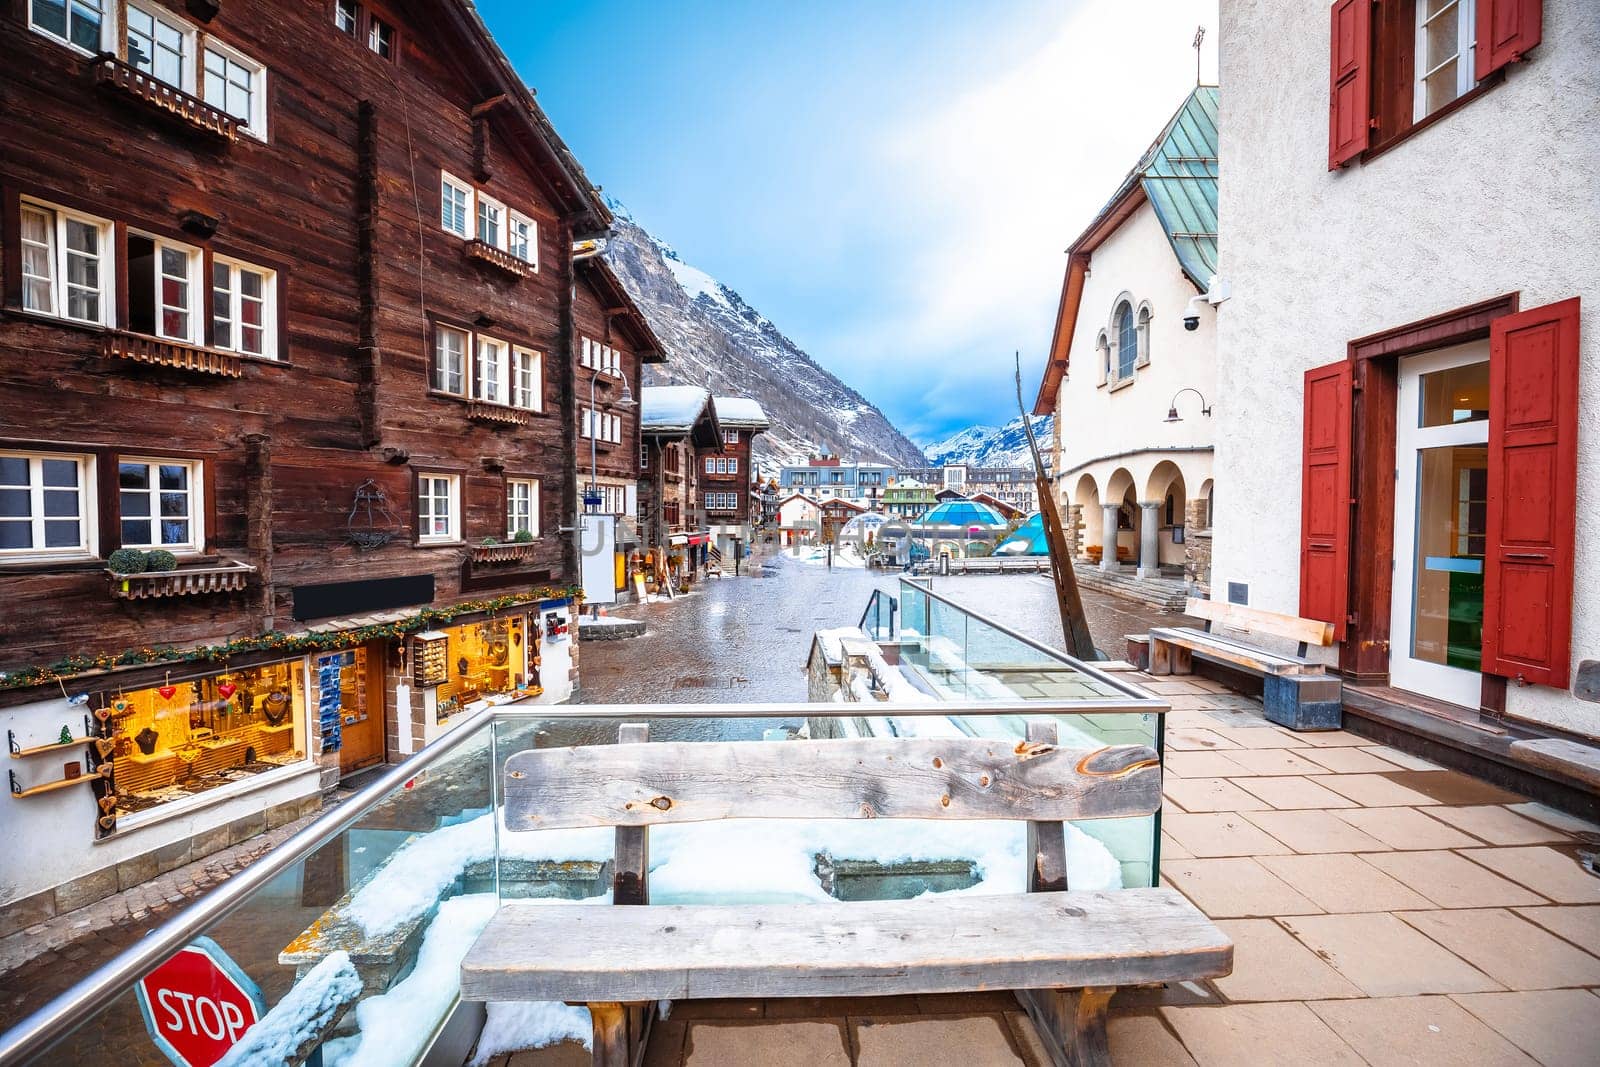 Idyllic town of Zermatt city center view, luxury winter destination in Switzerland